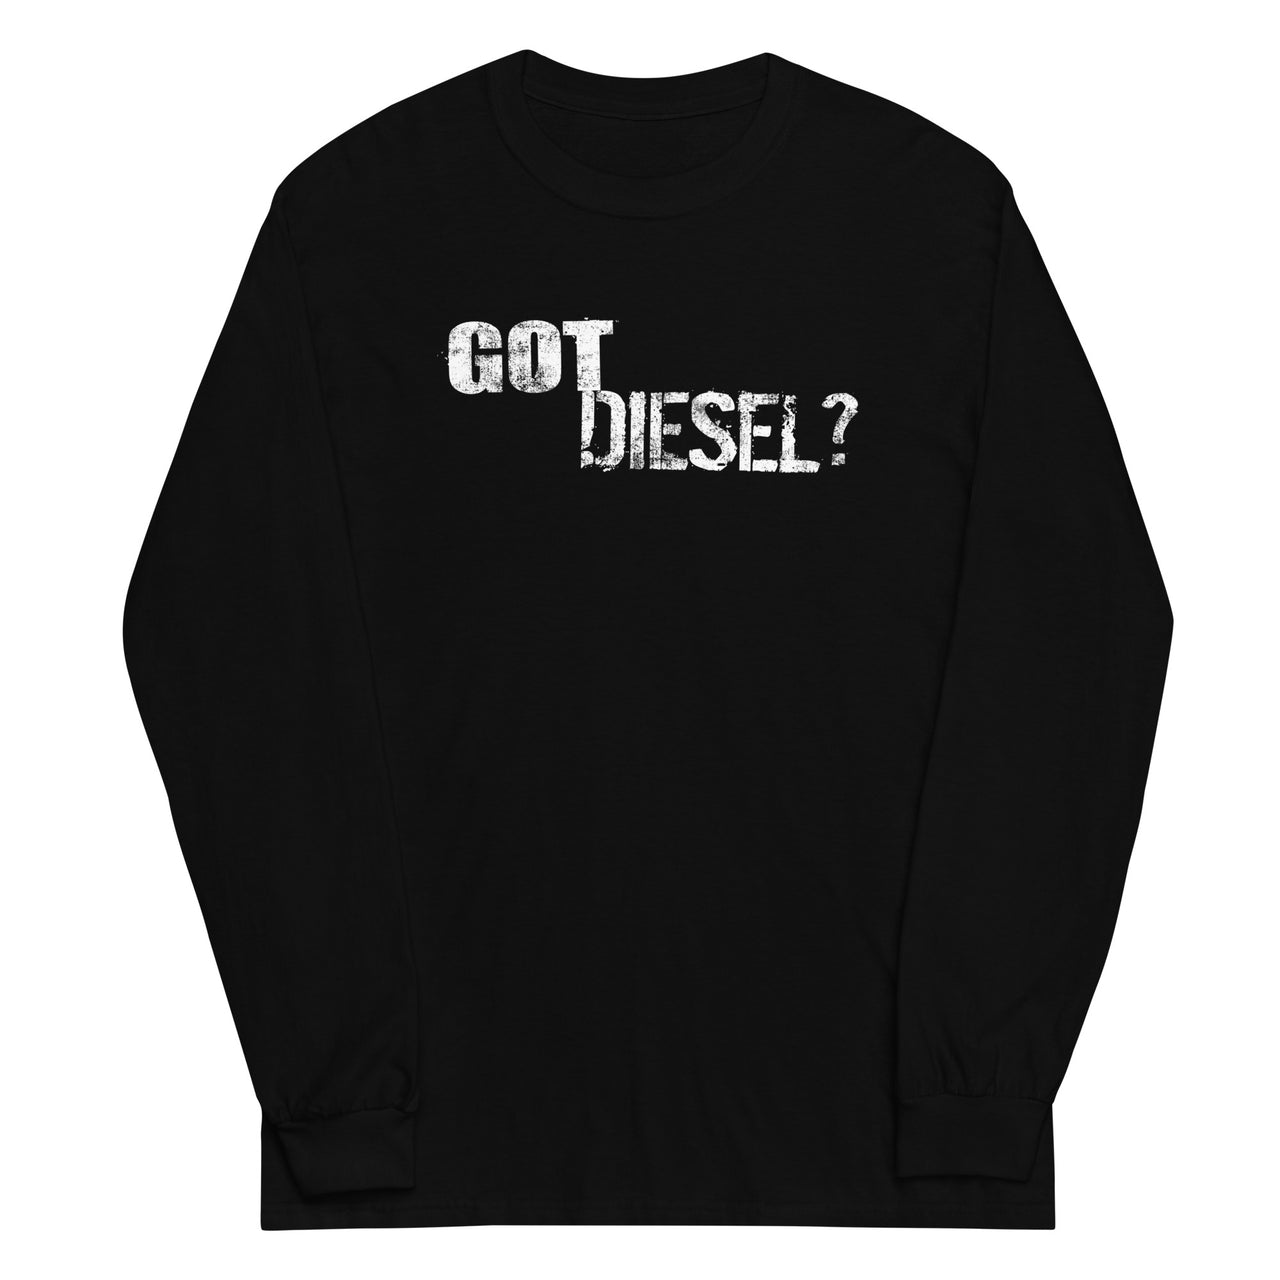 Got Diesel? Long Sleeve Shirt in black